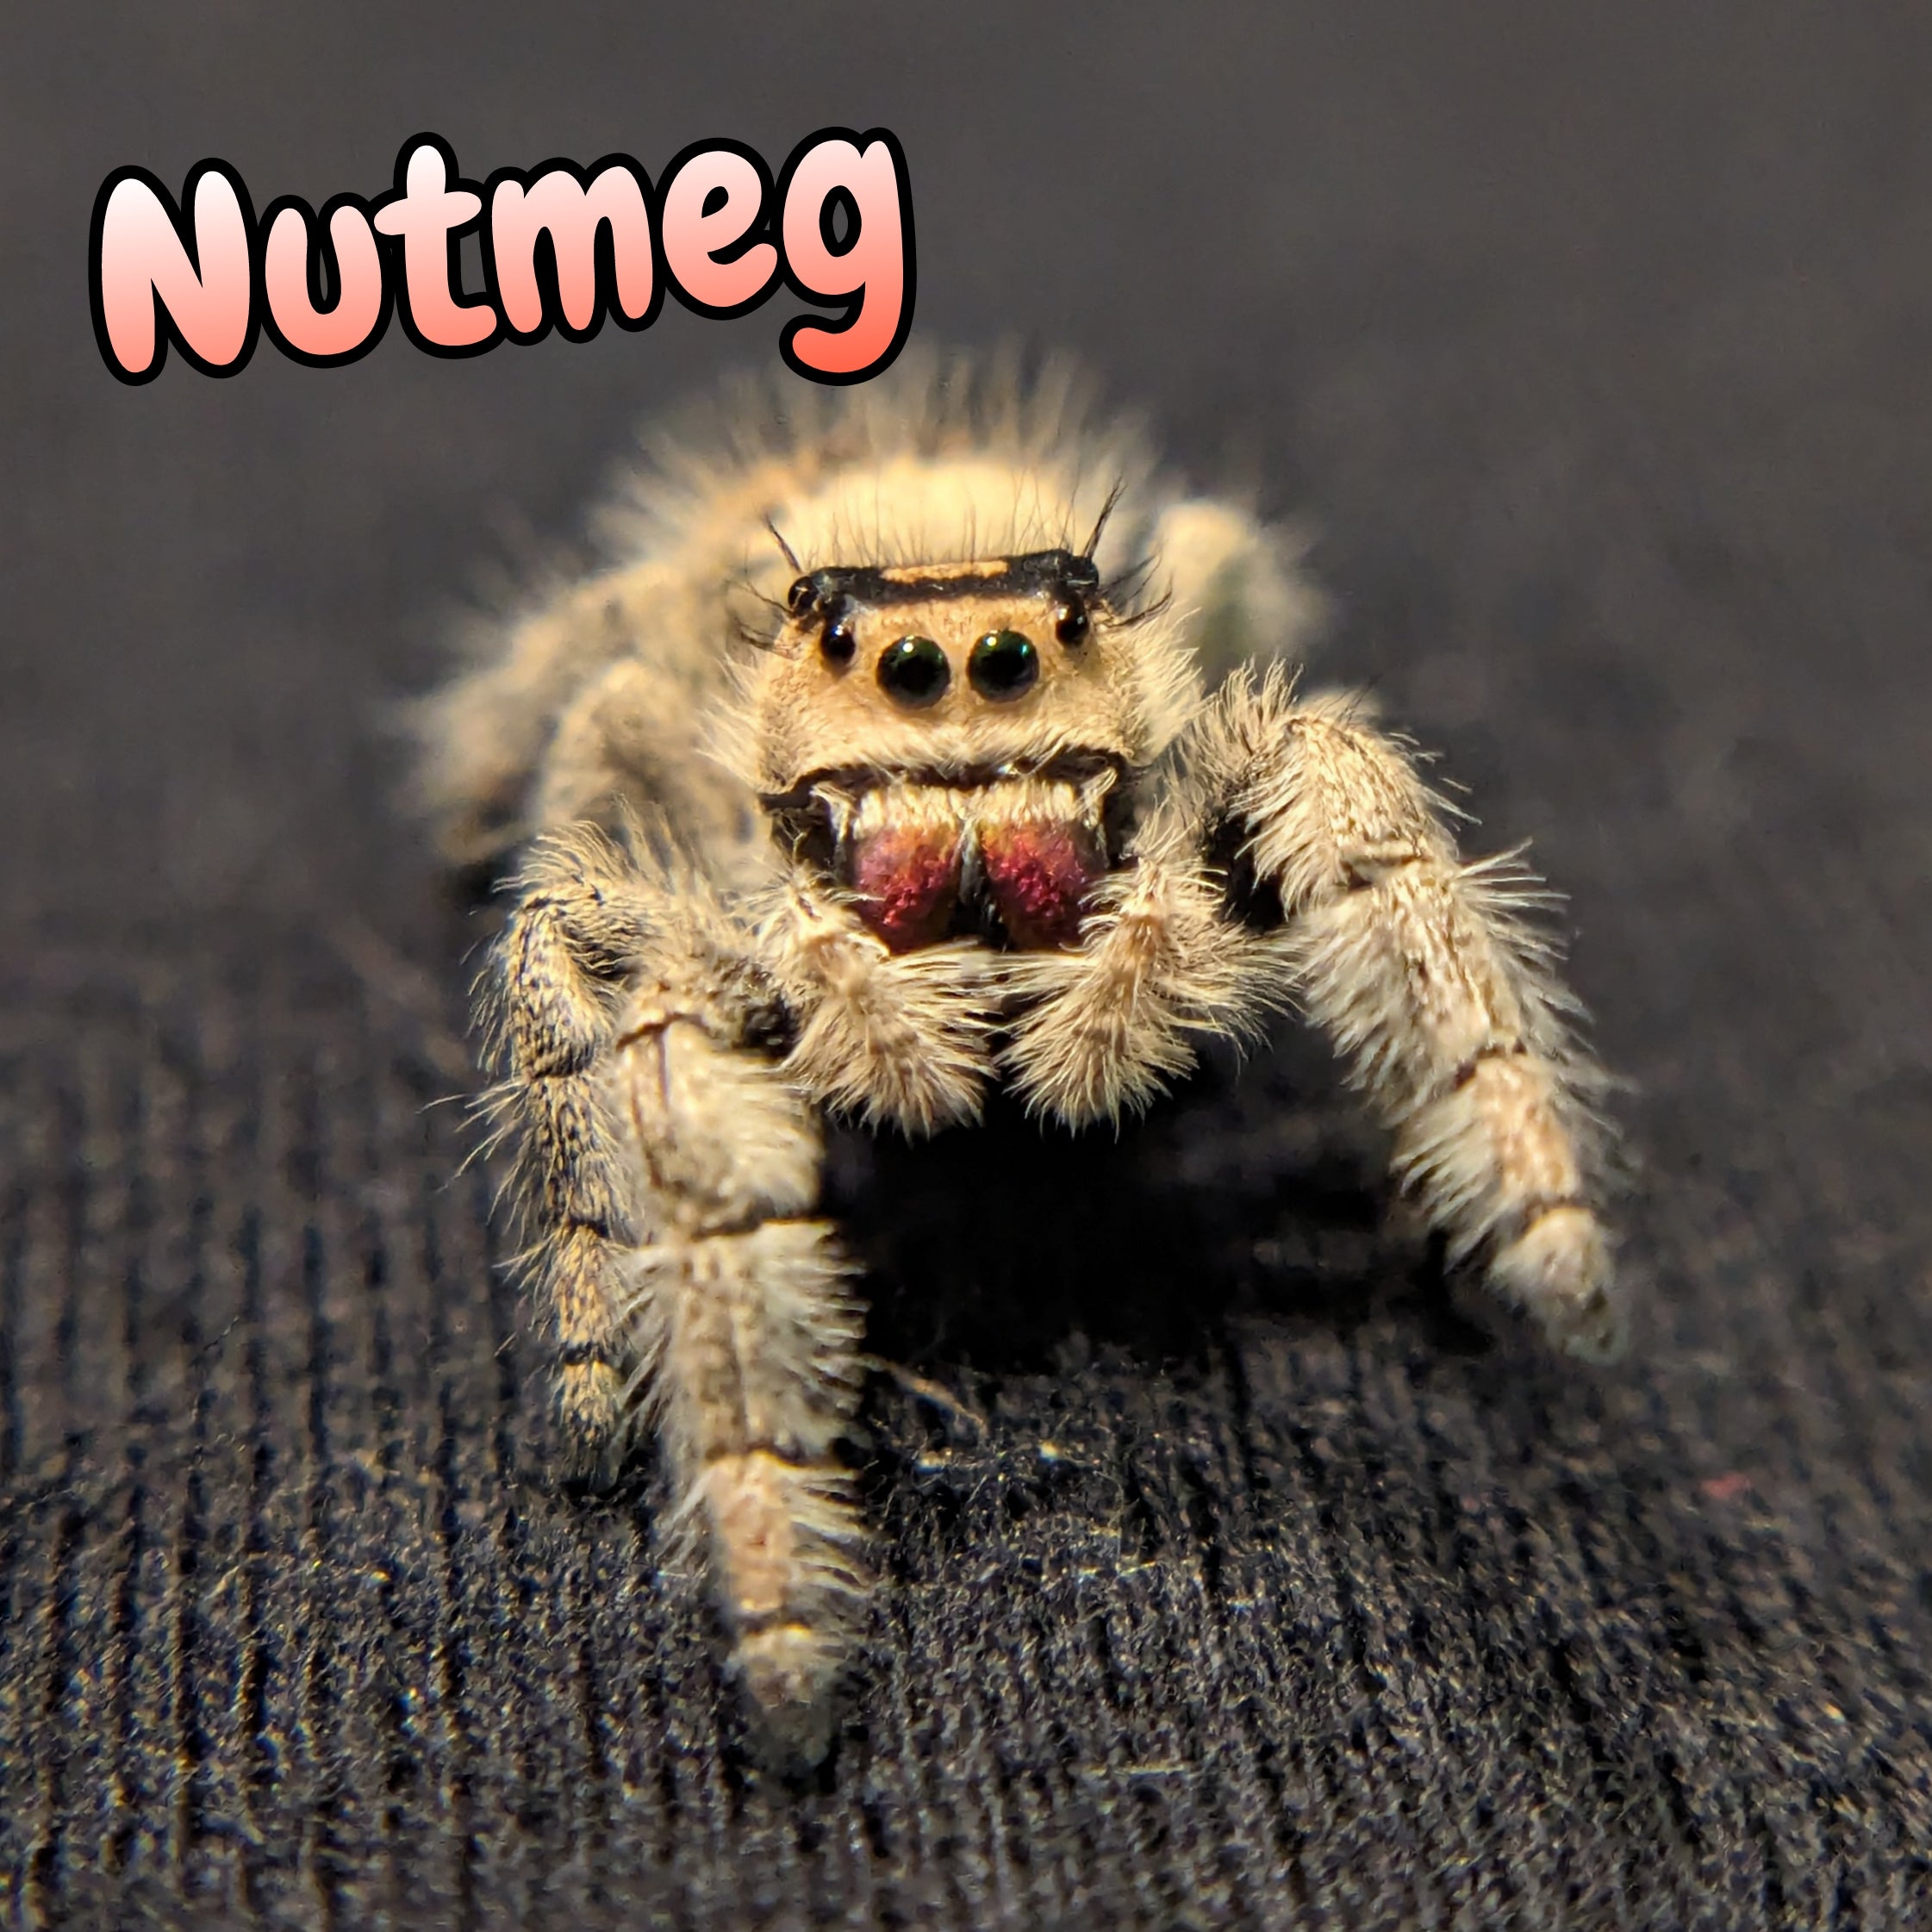 Regal Jumping Spider "Nutmeg"